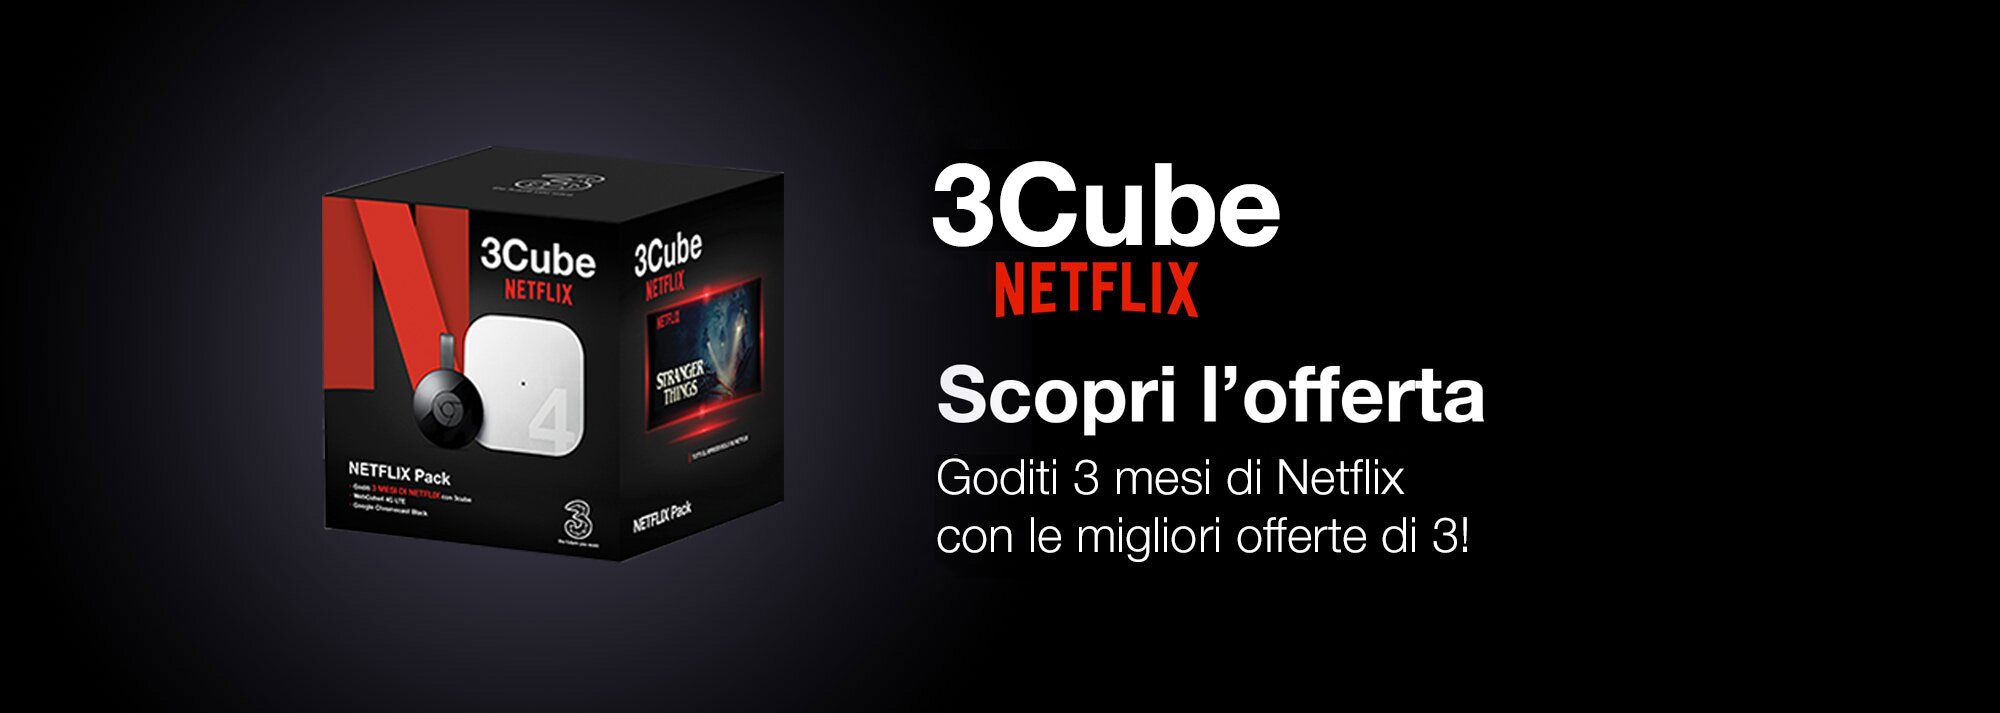 3Cube Netflix